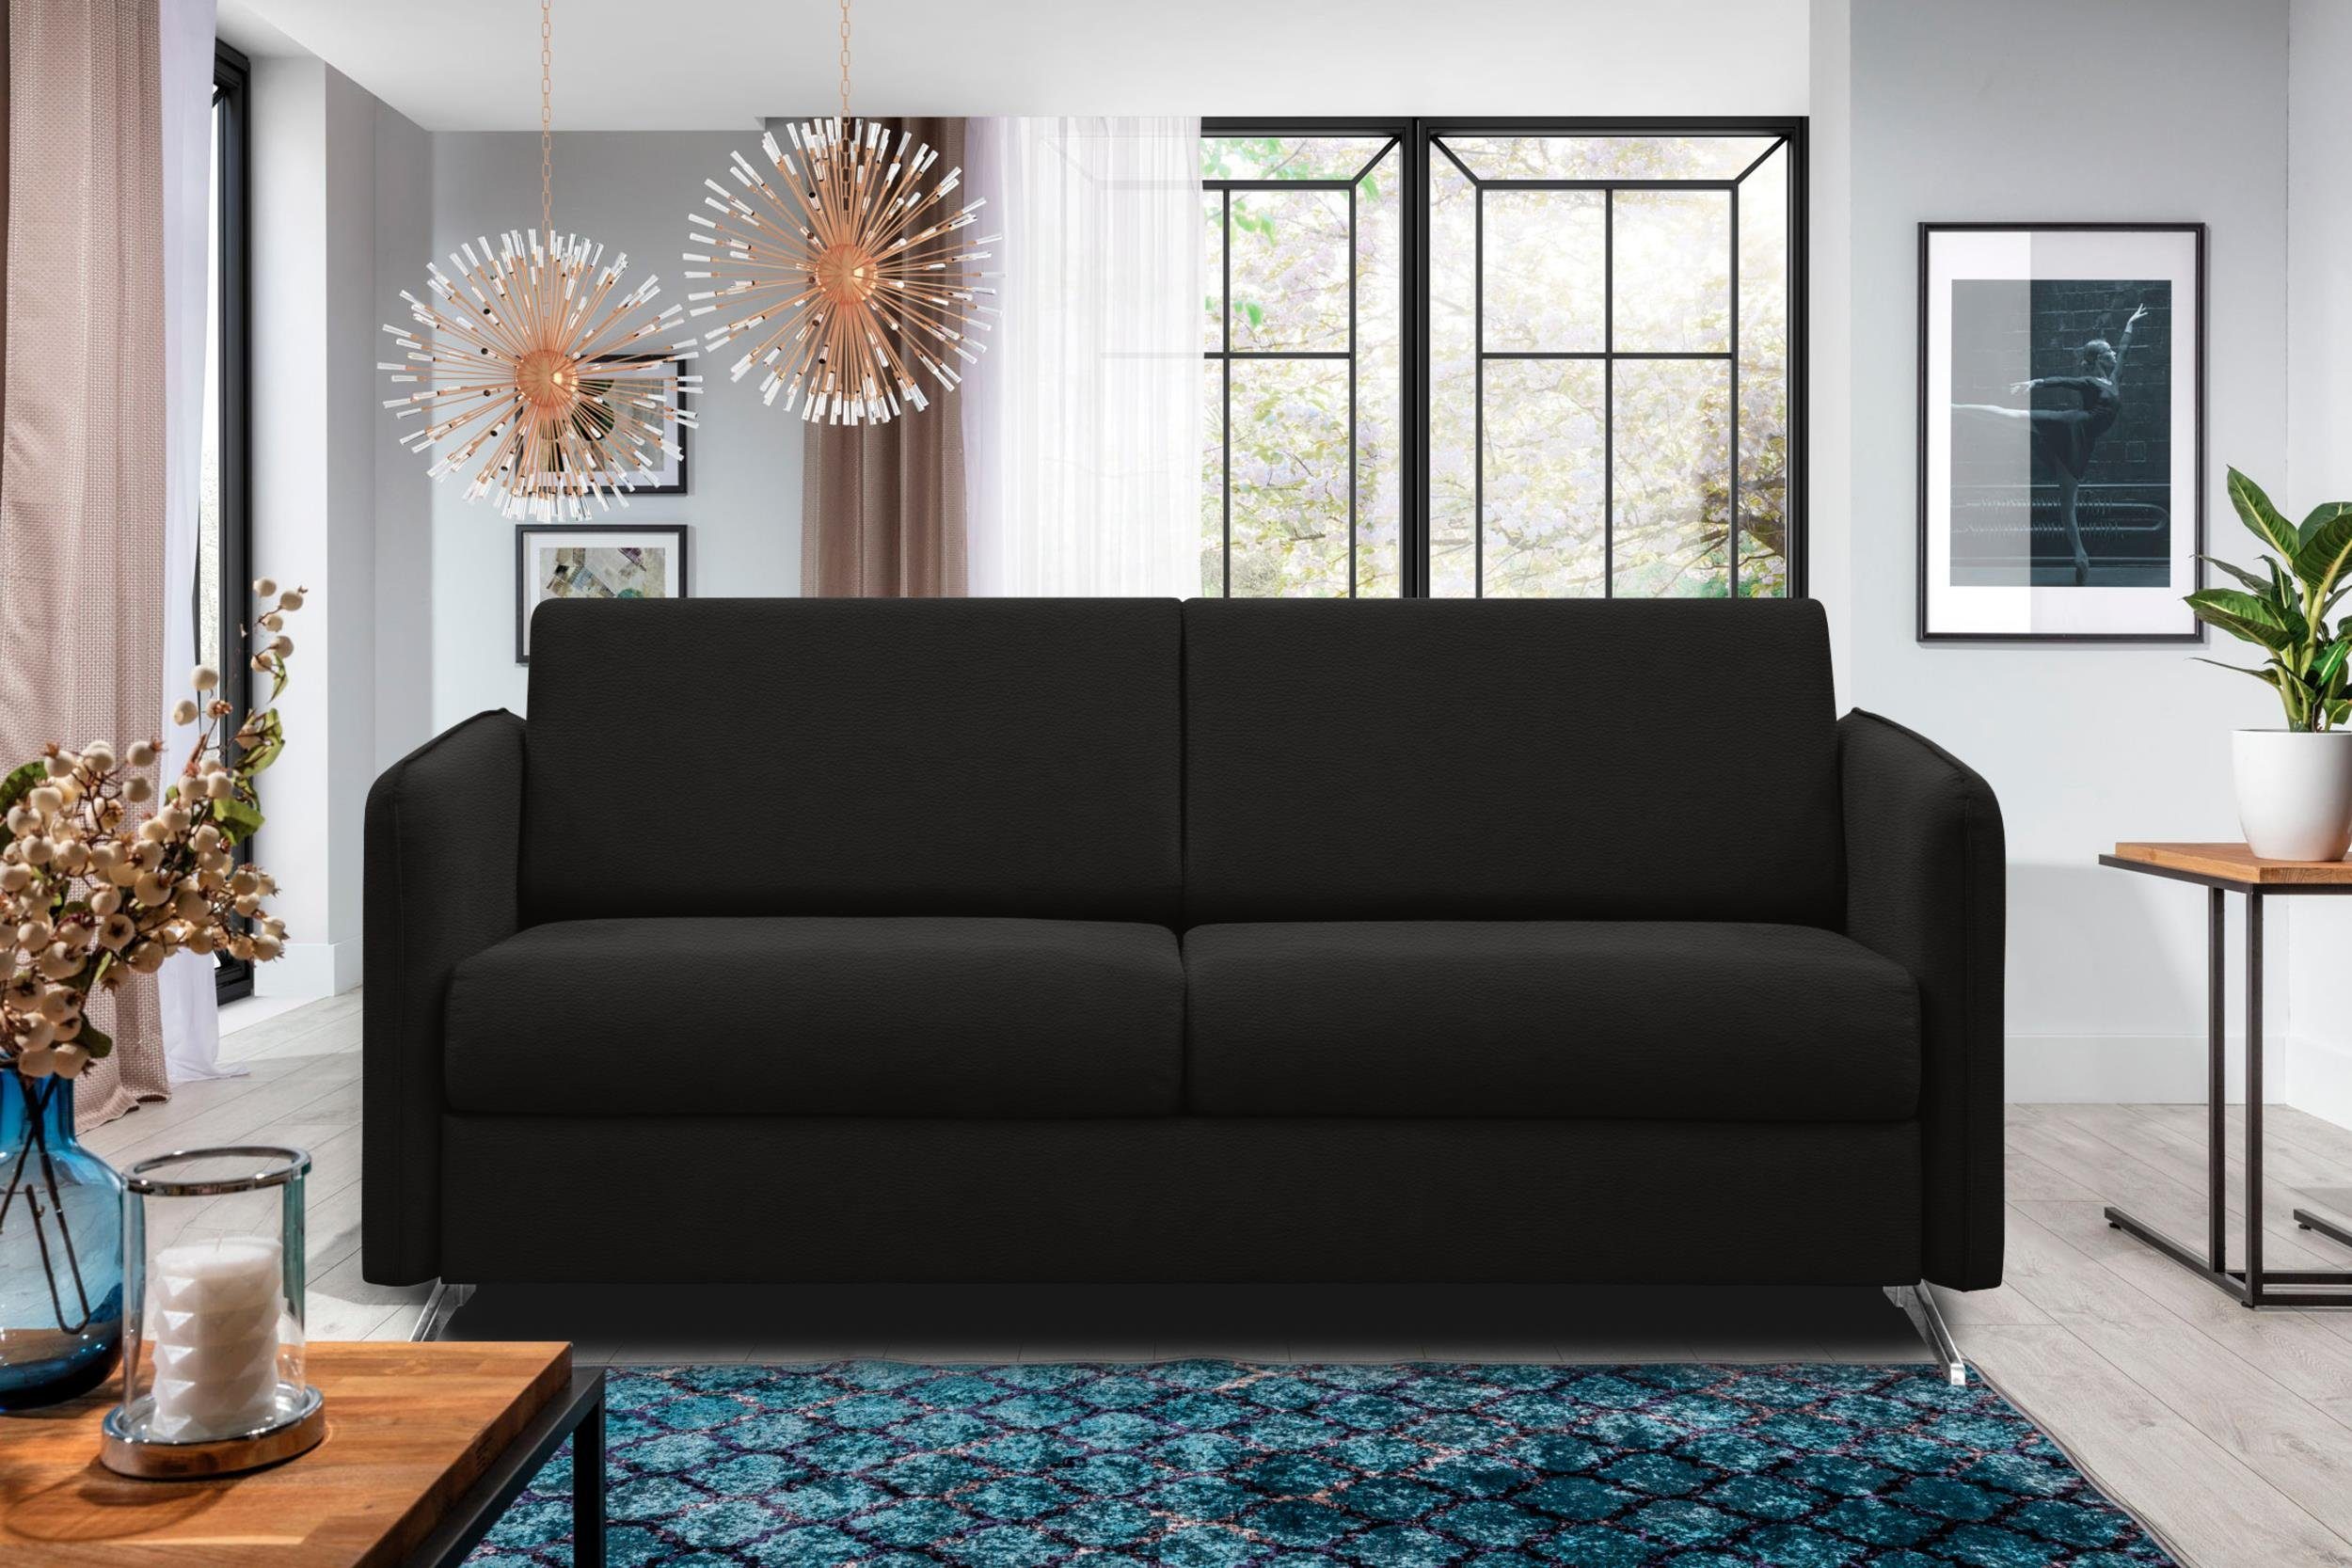 frei Metall Stylefy mit 3-Sitzer Sofa, Design, 2-Sitzer, im Raum Modern stellbar, Bettfunktion, Sherlock,